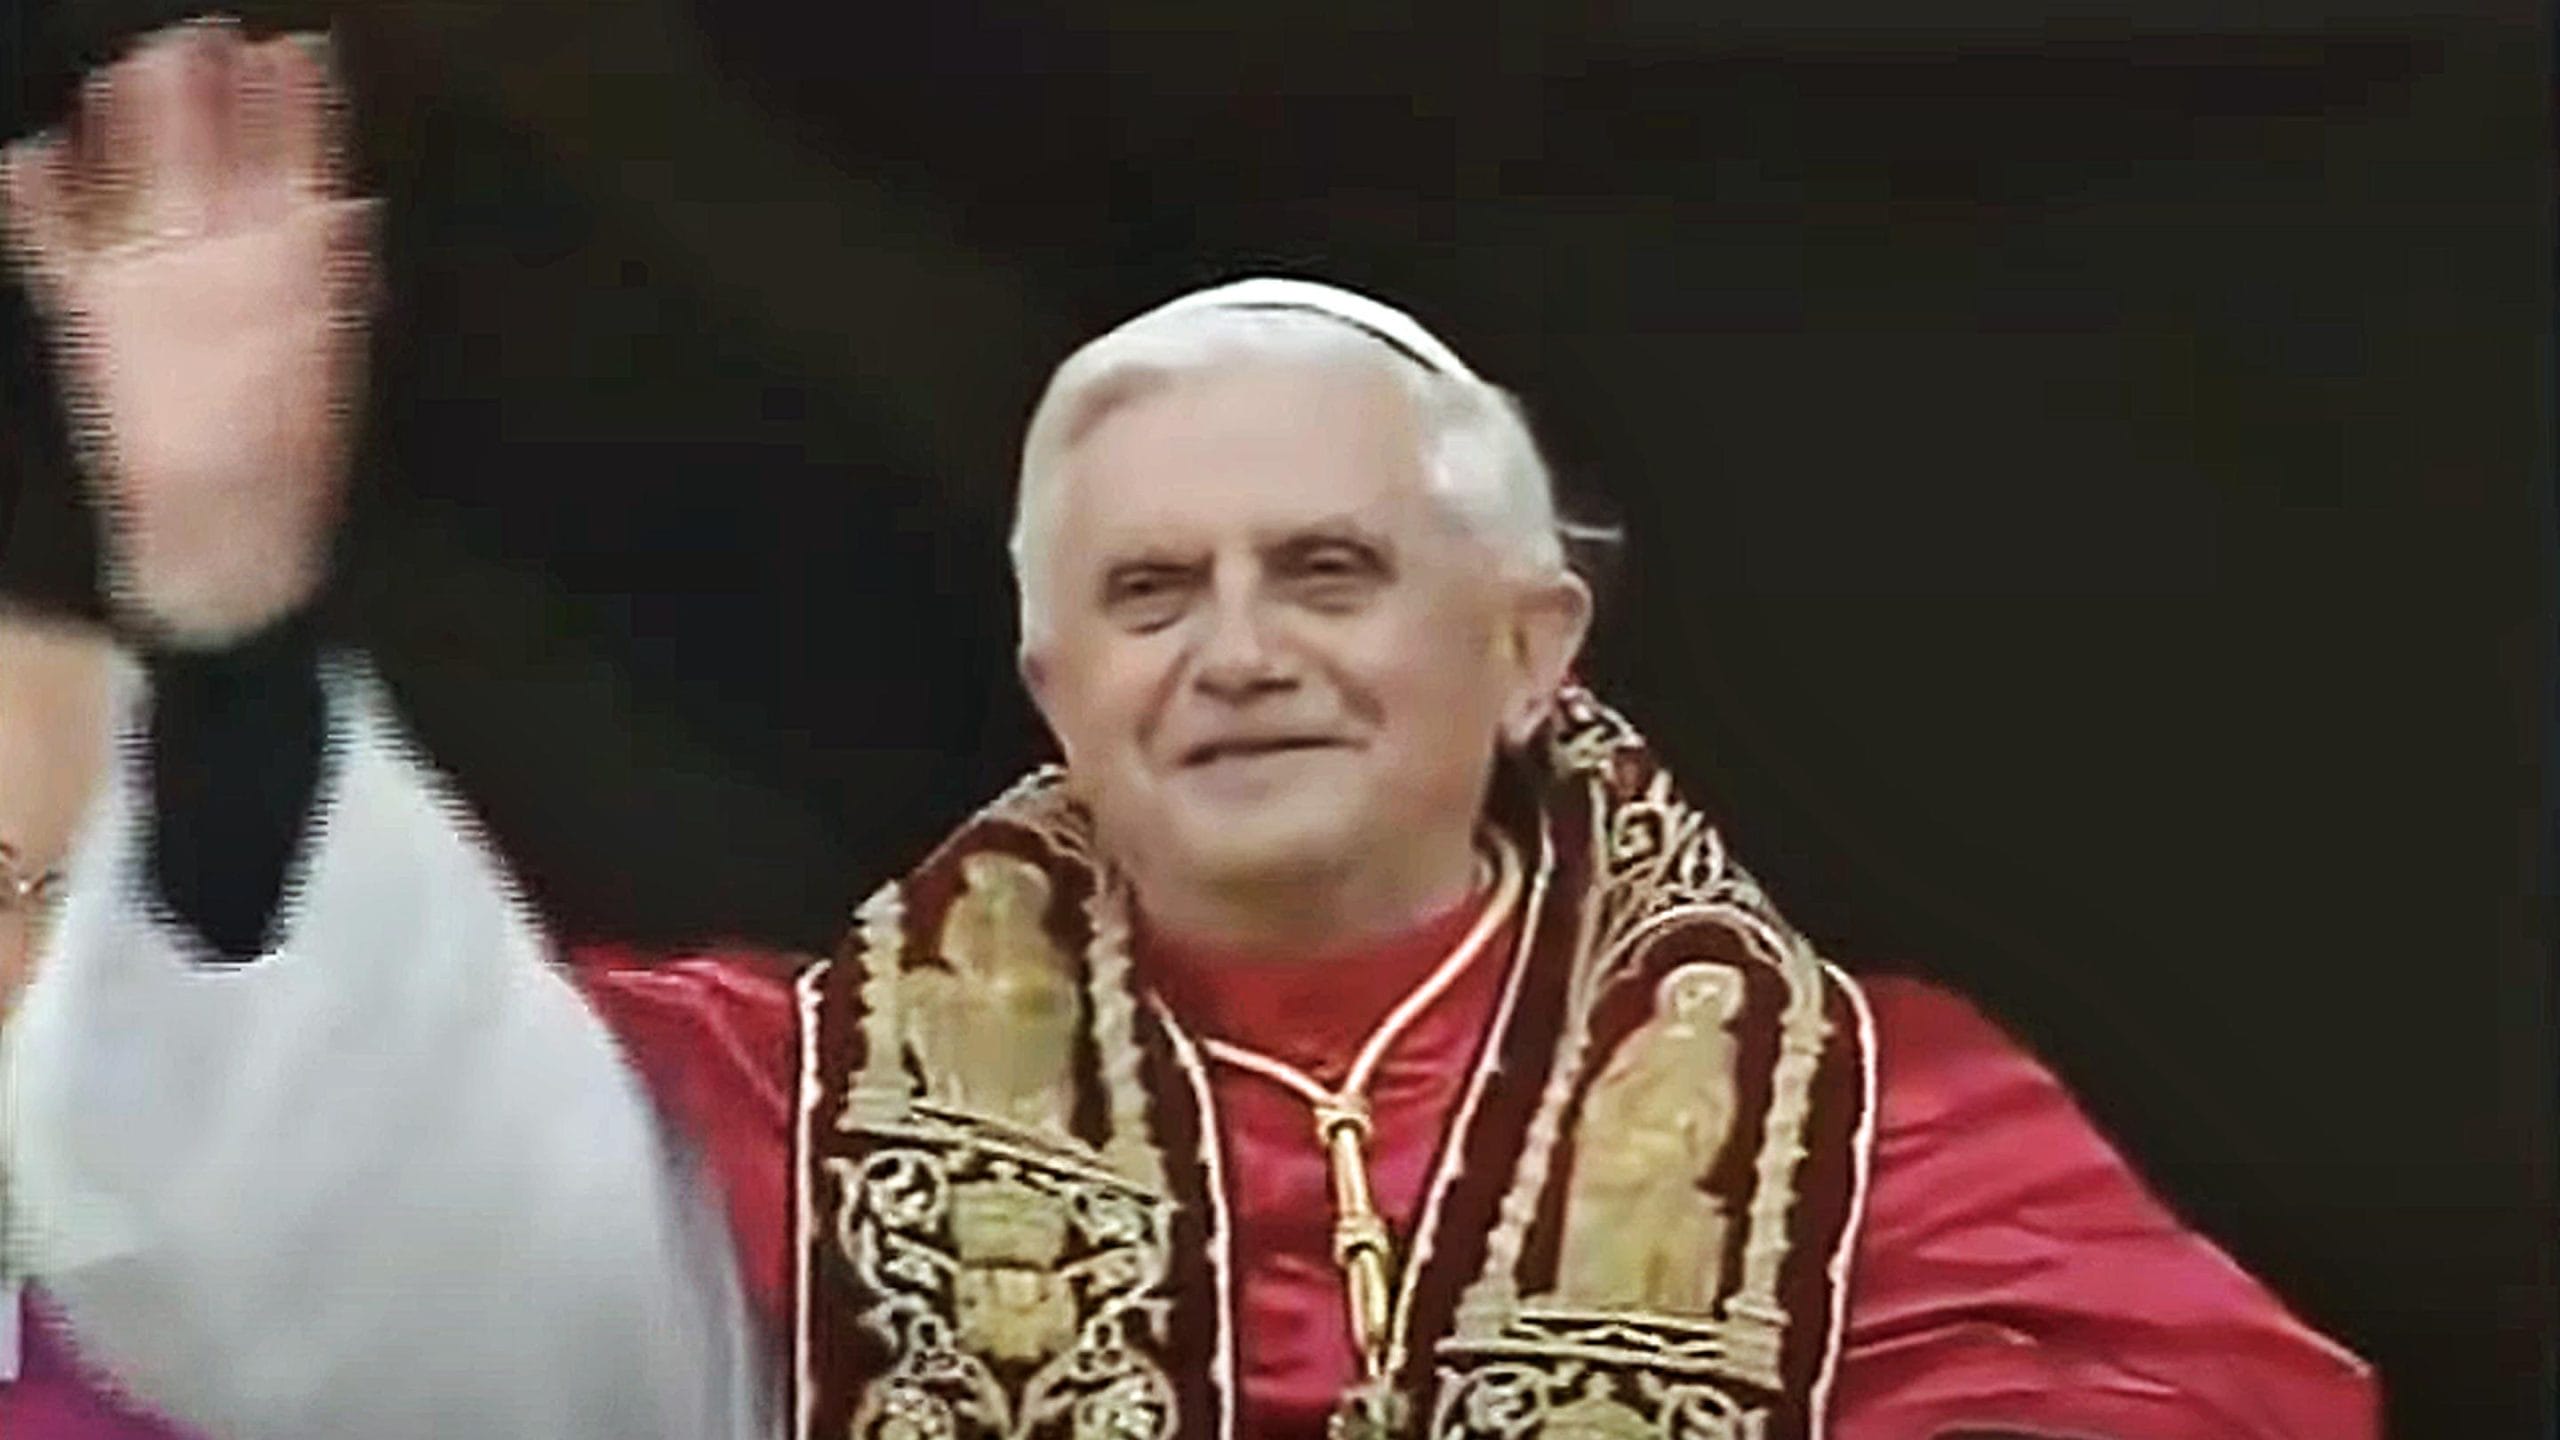 Morte di Benedetto XVI, Giani: “Passerà alla storia per il coraggio di dimettersi”. Nardella: “Riflettere sui valori profondi della spiritualità”